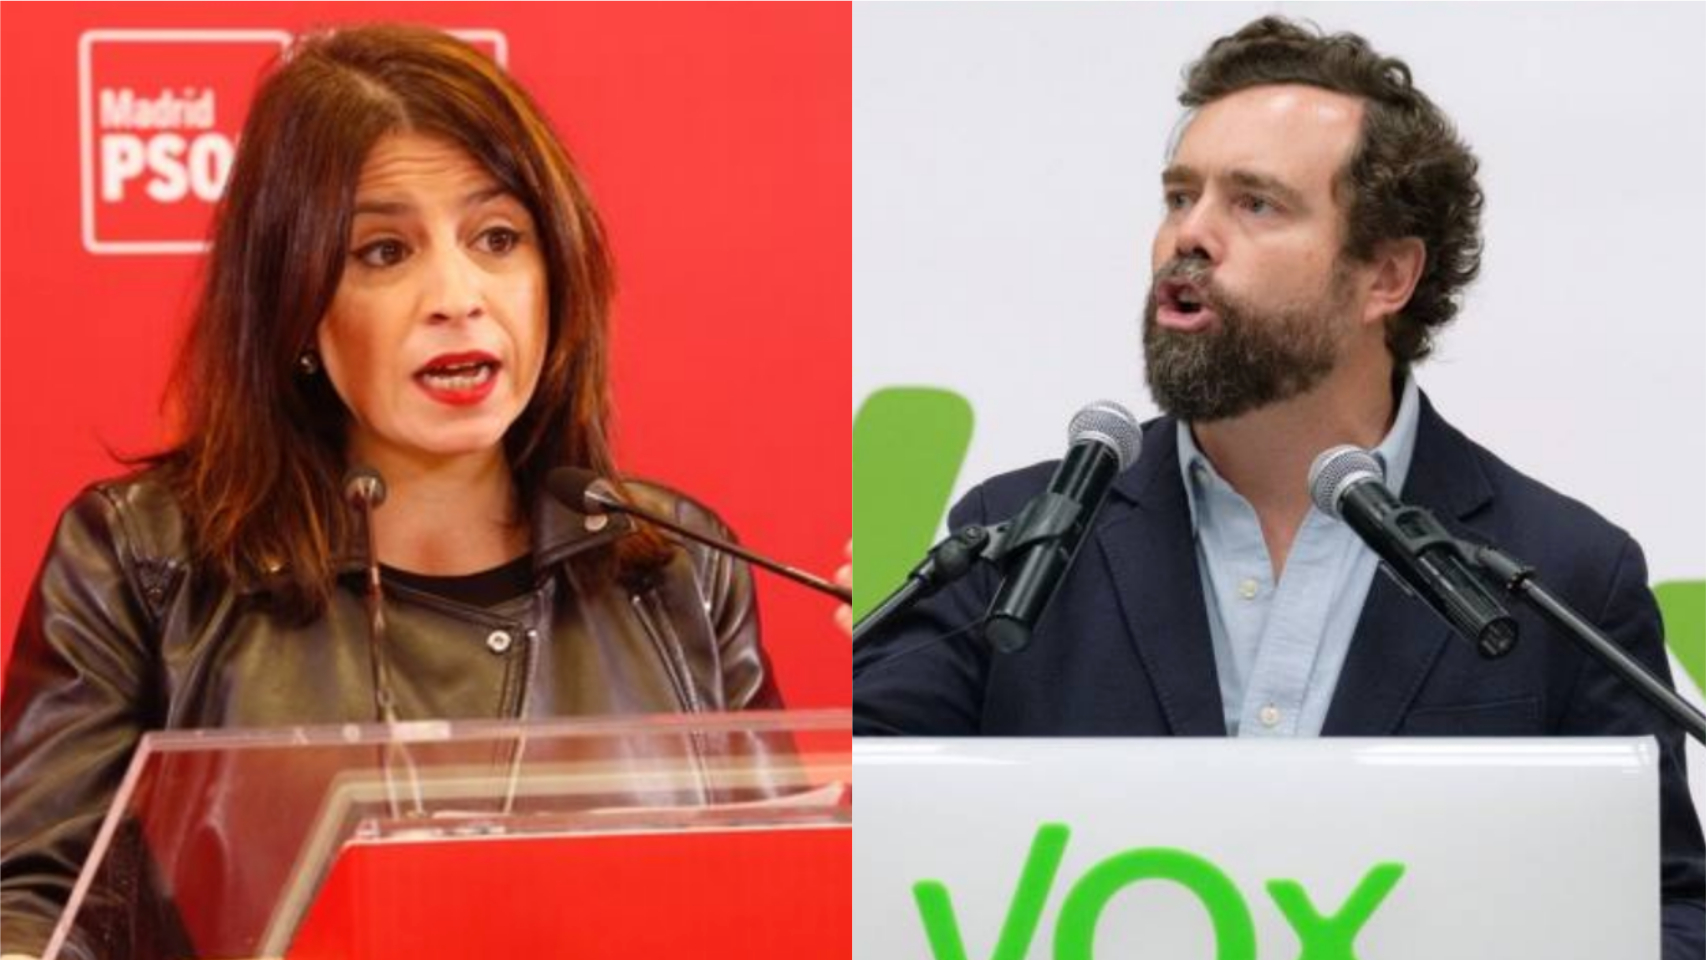 Adriana Lastra (PSOE) e Iván Espinosa de los Monteros (Vox) en un montaje.